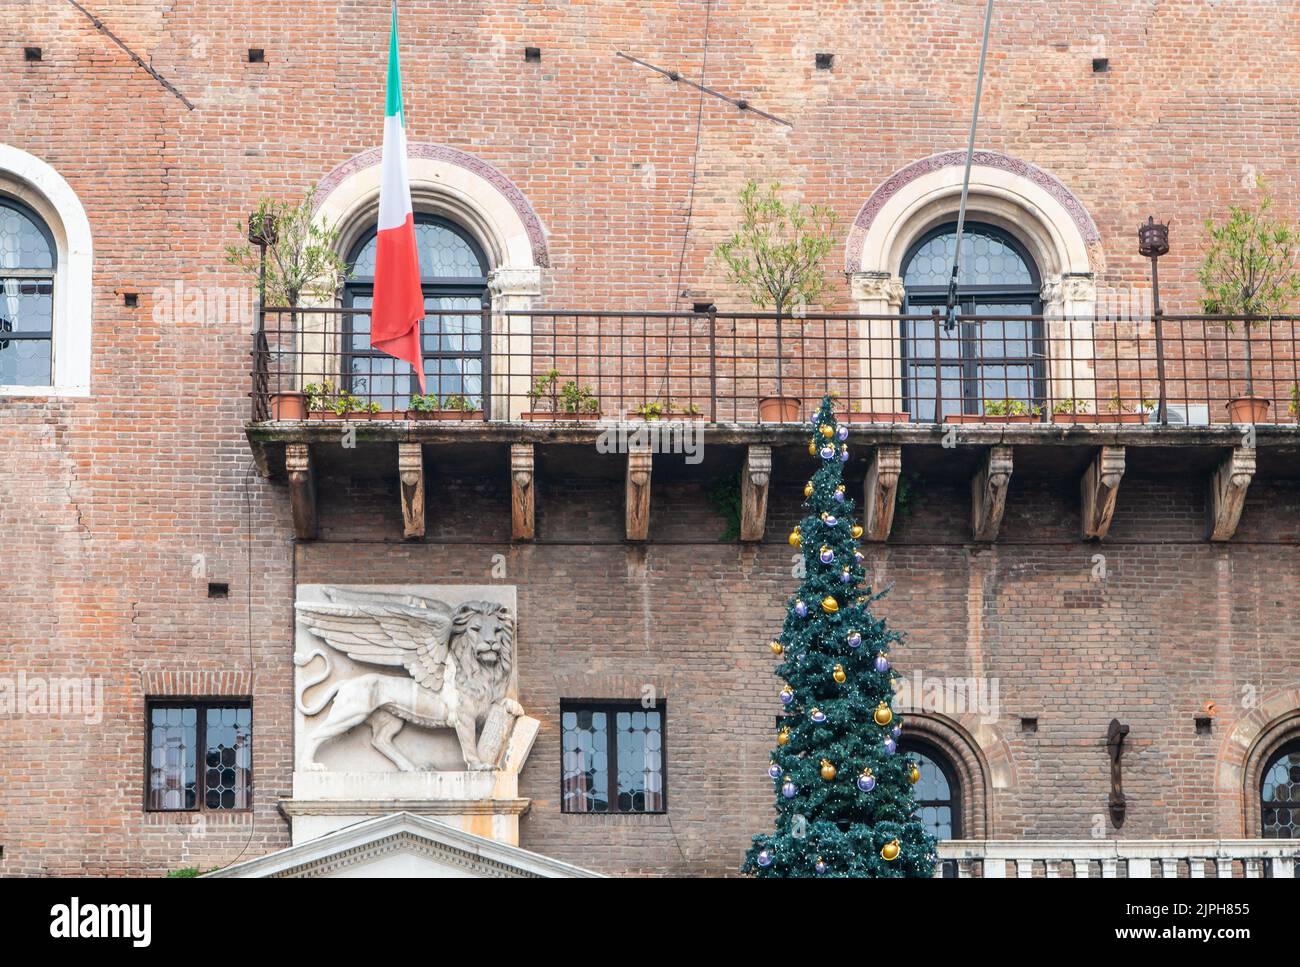 Palazzo del Governo (Palazzo Podestà) situato in Piazza Palazzo dei Signori, nel centro storico di Verona. Particolare della facciata - Italia settentrionale, dicembre Foto Stock